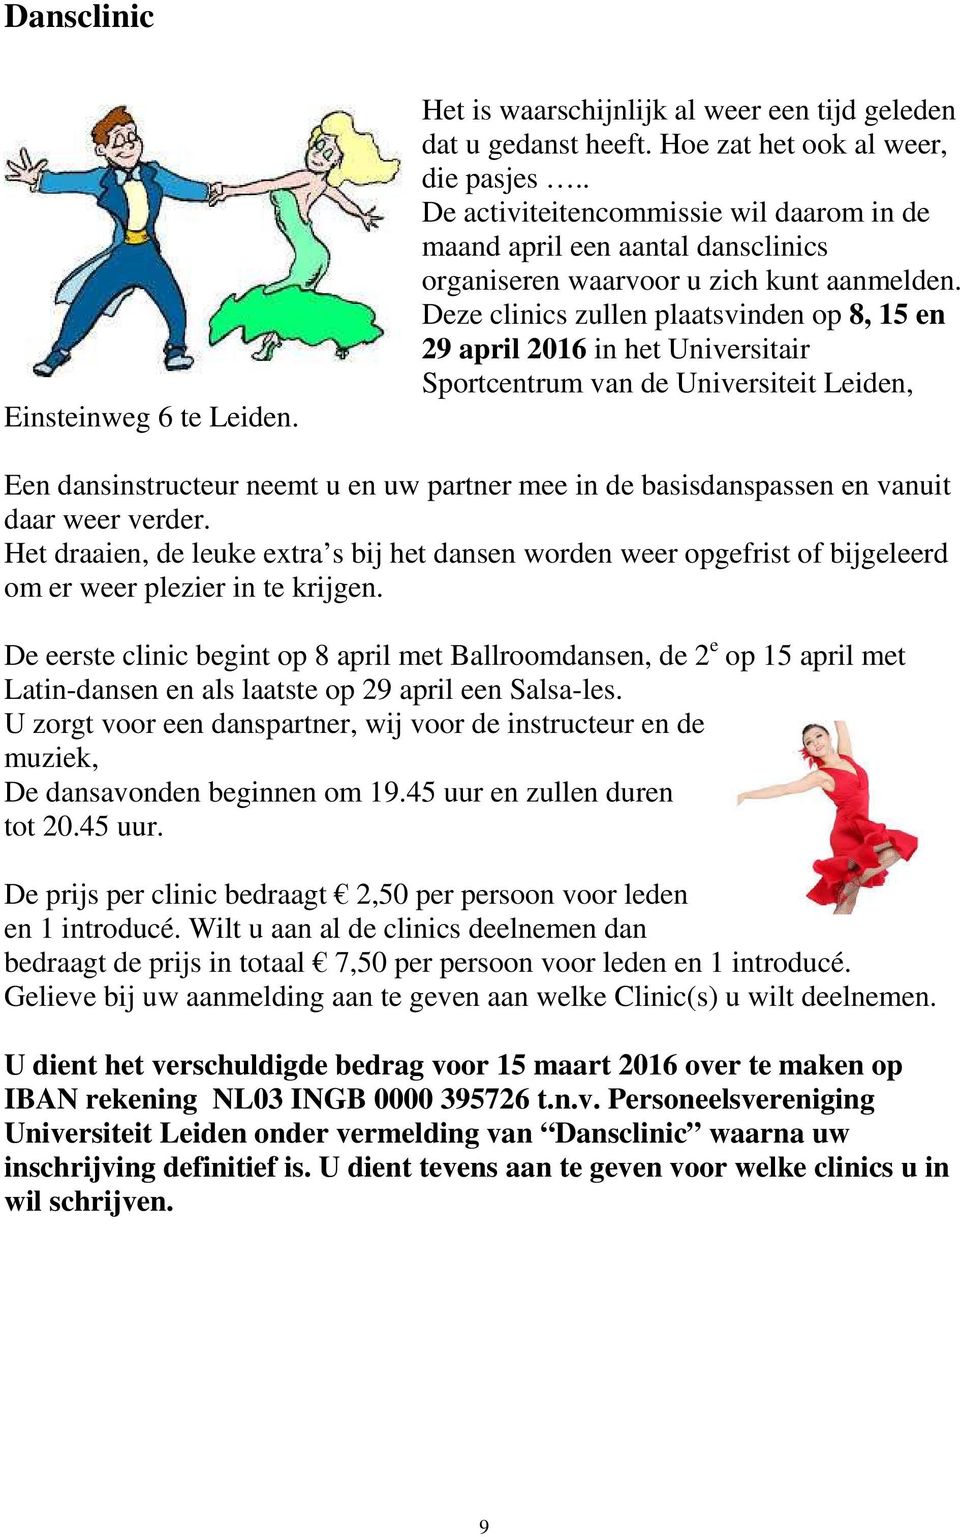 Deze clinics zullen plaatsvinden op 8, 15 en 29 april 2016 in het Universitair Sportcentrum van de Universiteit Leiden, Een dansinstructeur neemt u en uw partner mee in de basisdanspassen en vanuit